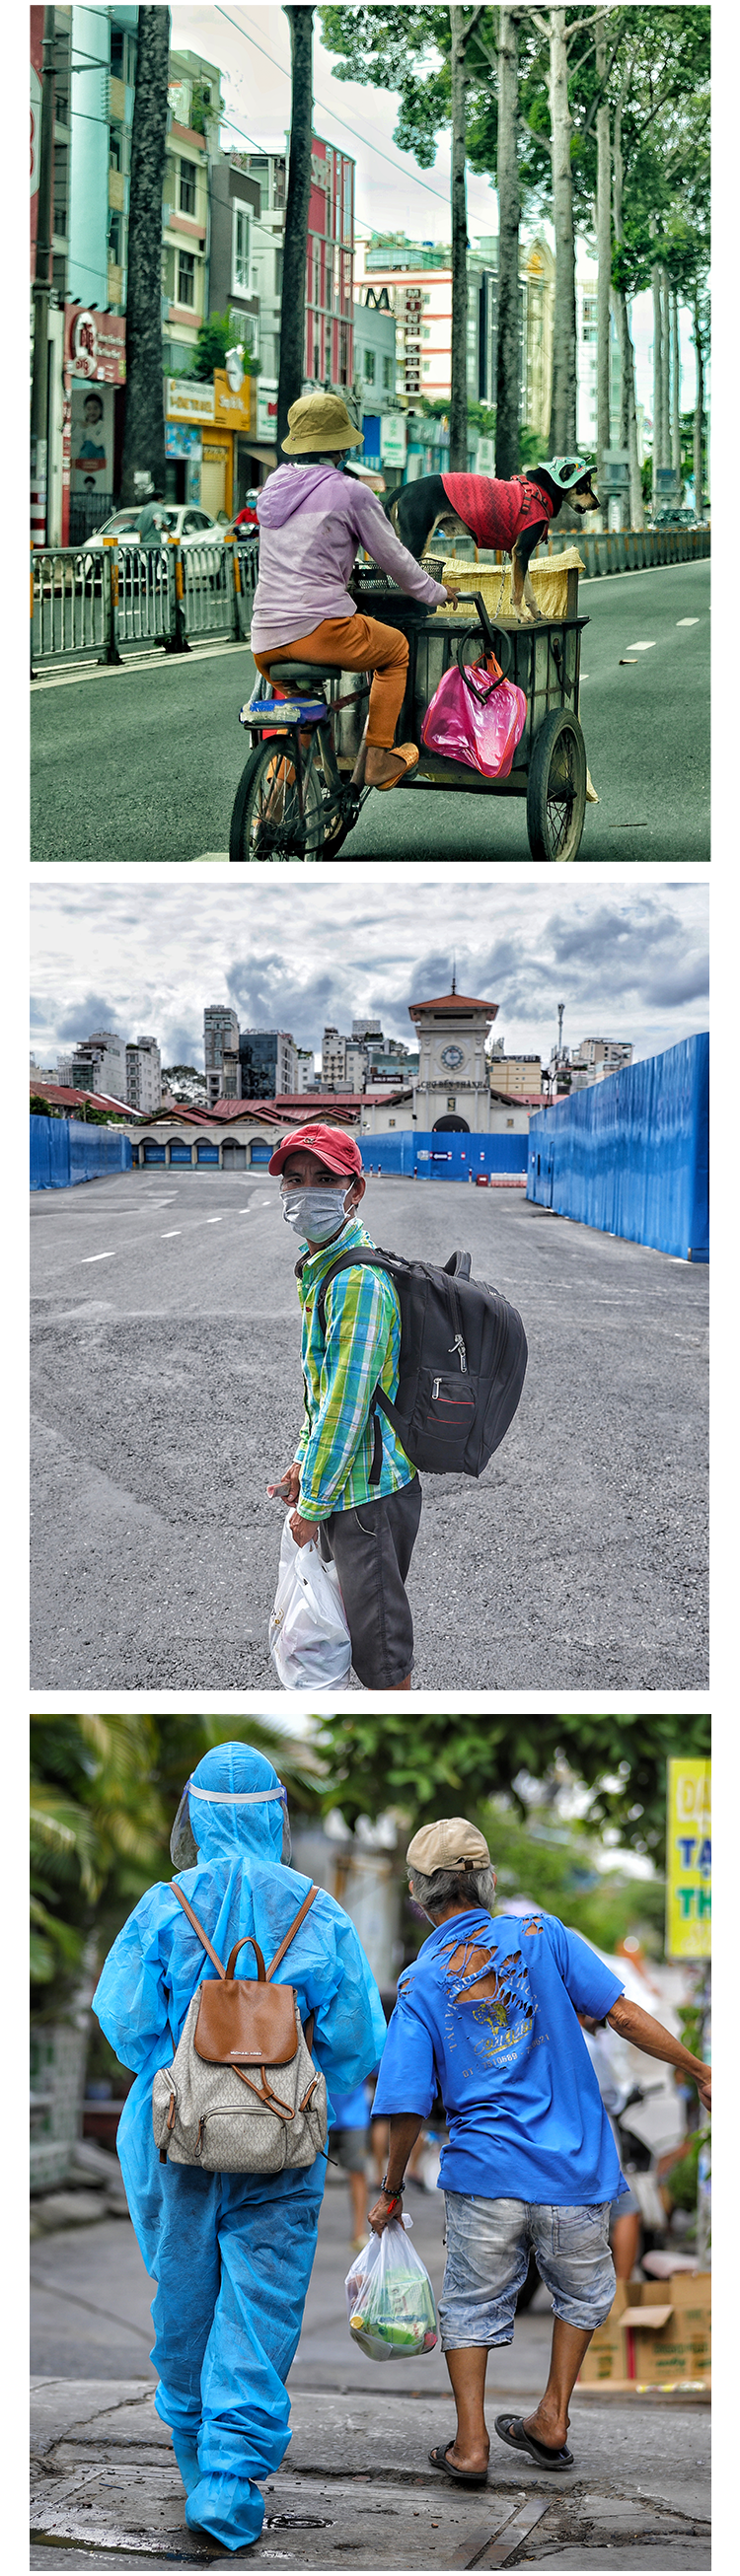 Nhiếp ảnh Hải Đông: Riết rồi thành shipper cứu trợ hồi nào không hay - 15